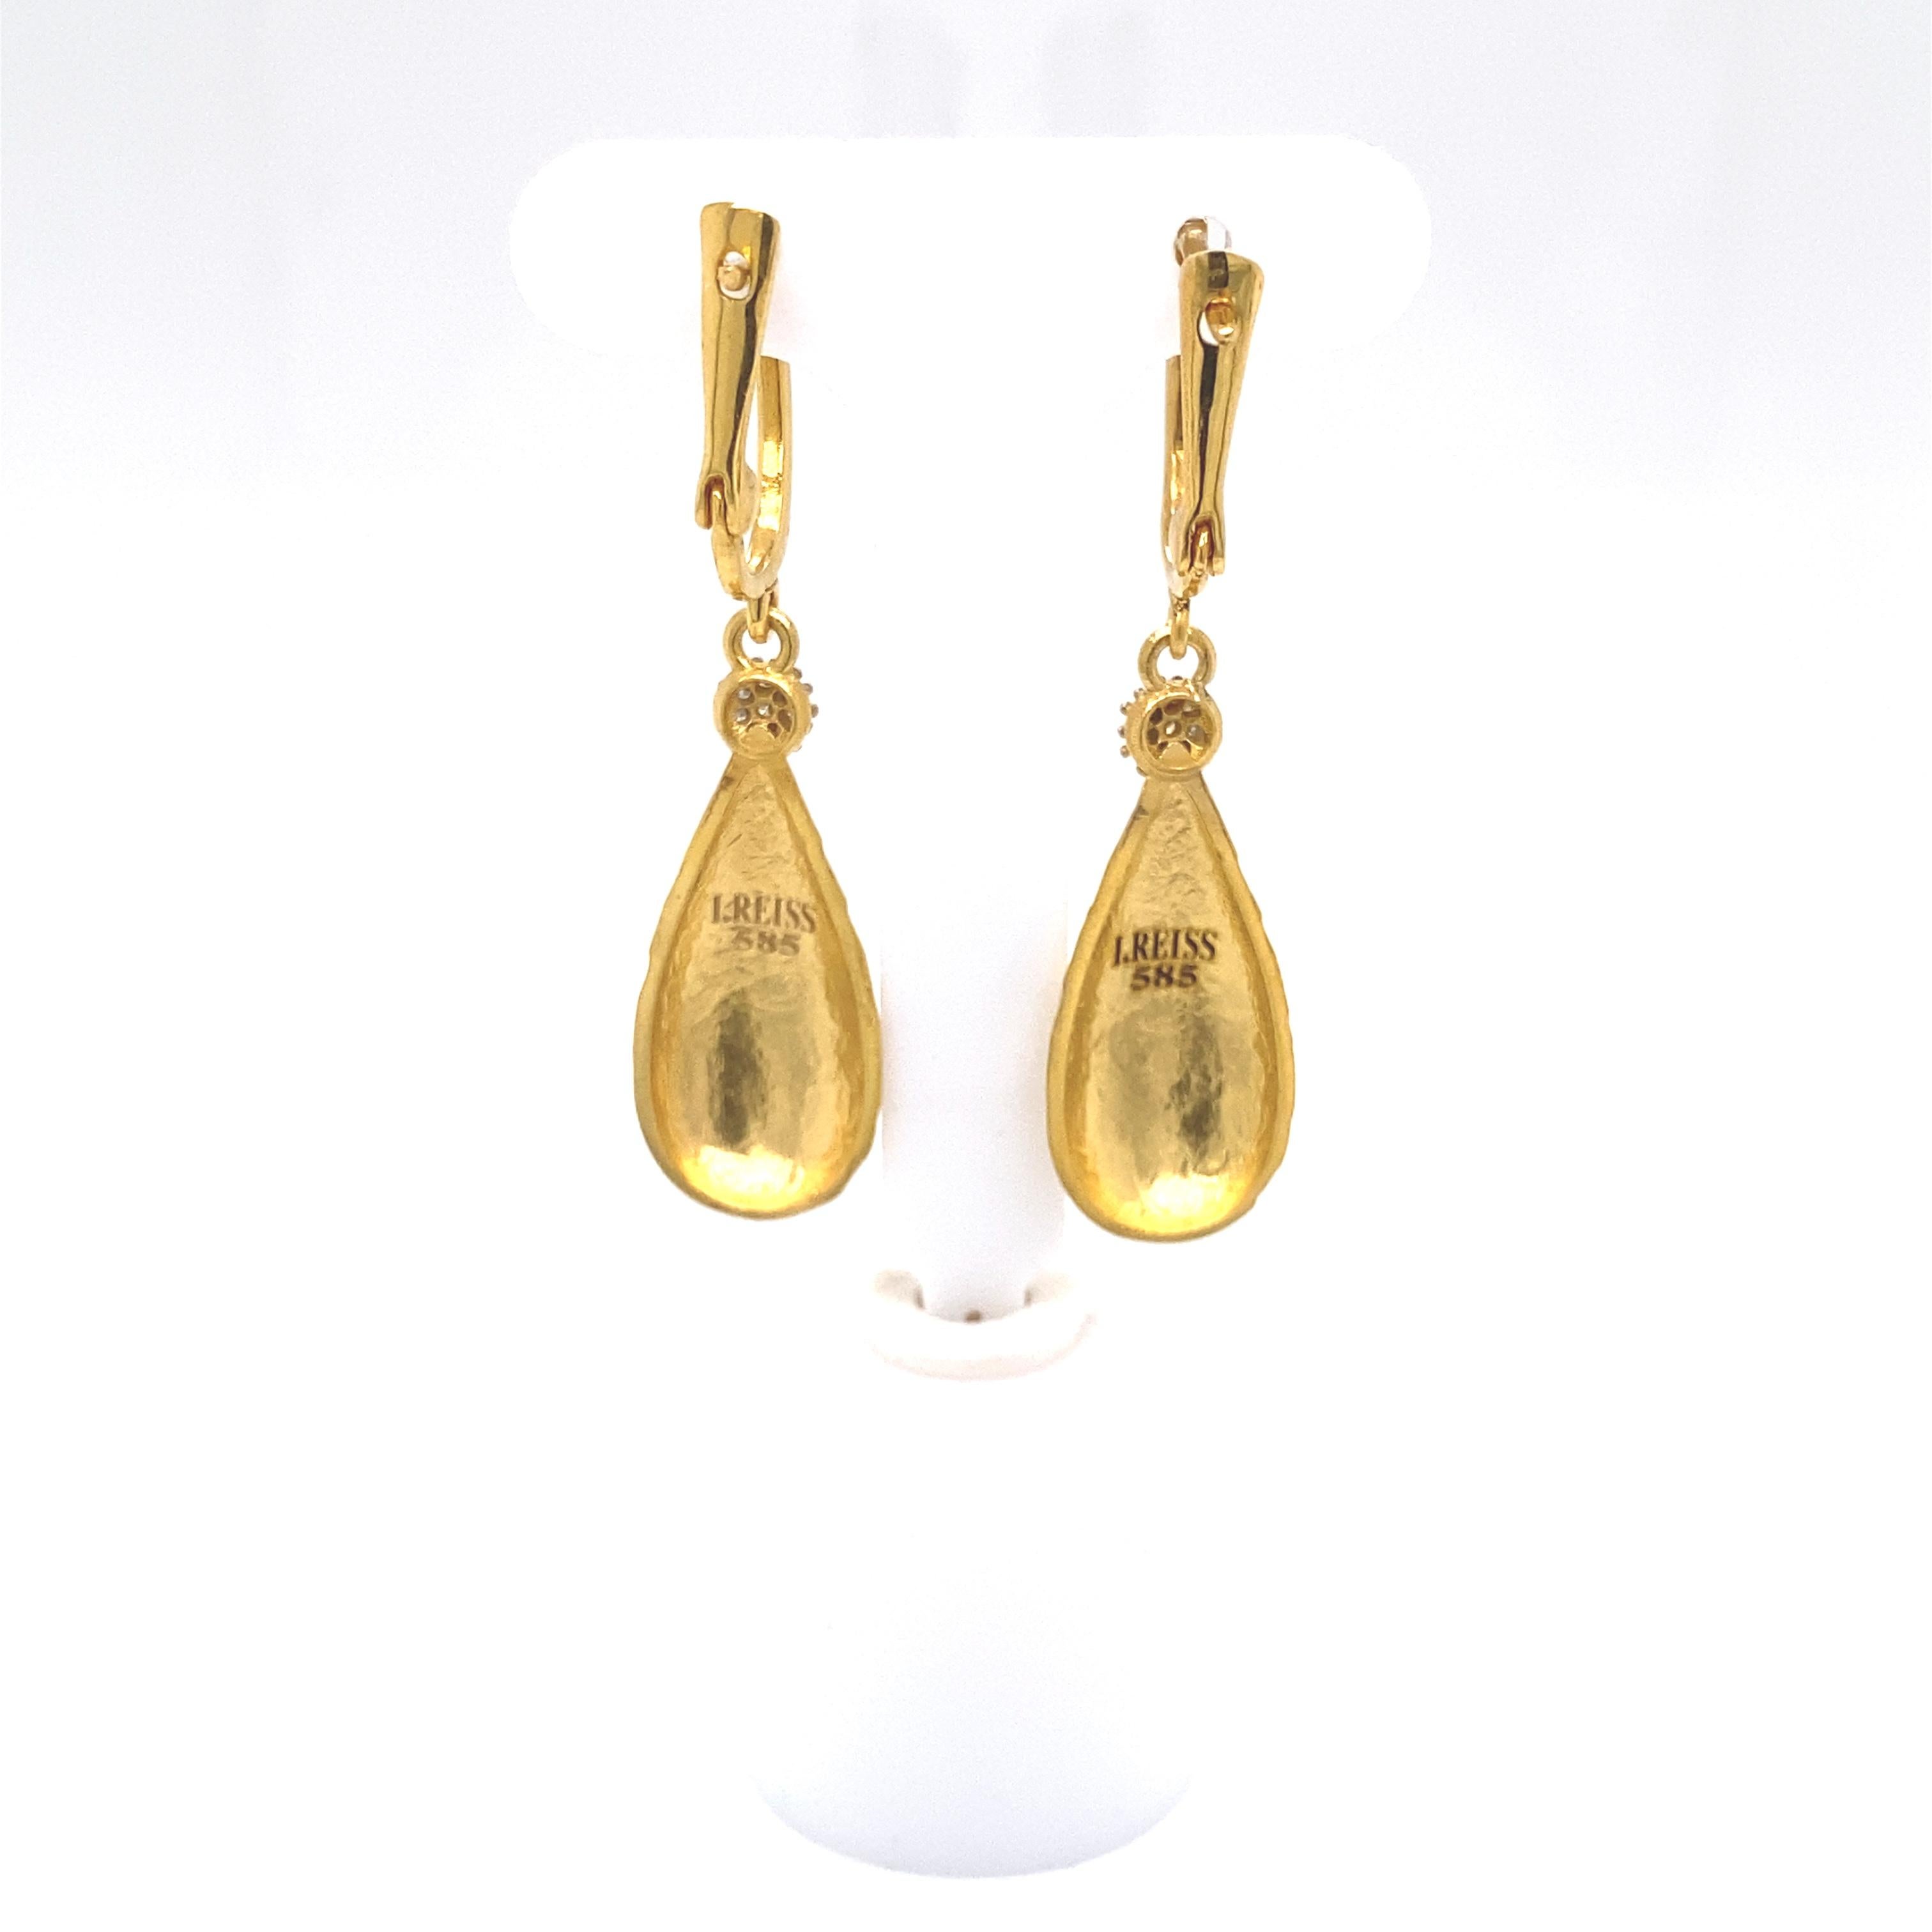 boucles d'oreilles pendantes en or jaune 14 carats, finition mate et martelée, agrémentées de 0,20 carat de diamants sertis en pavé.
